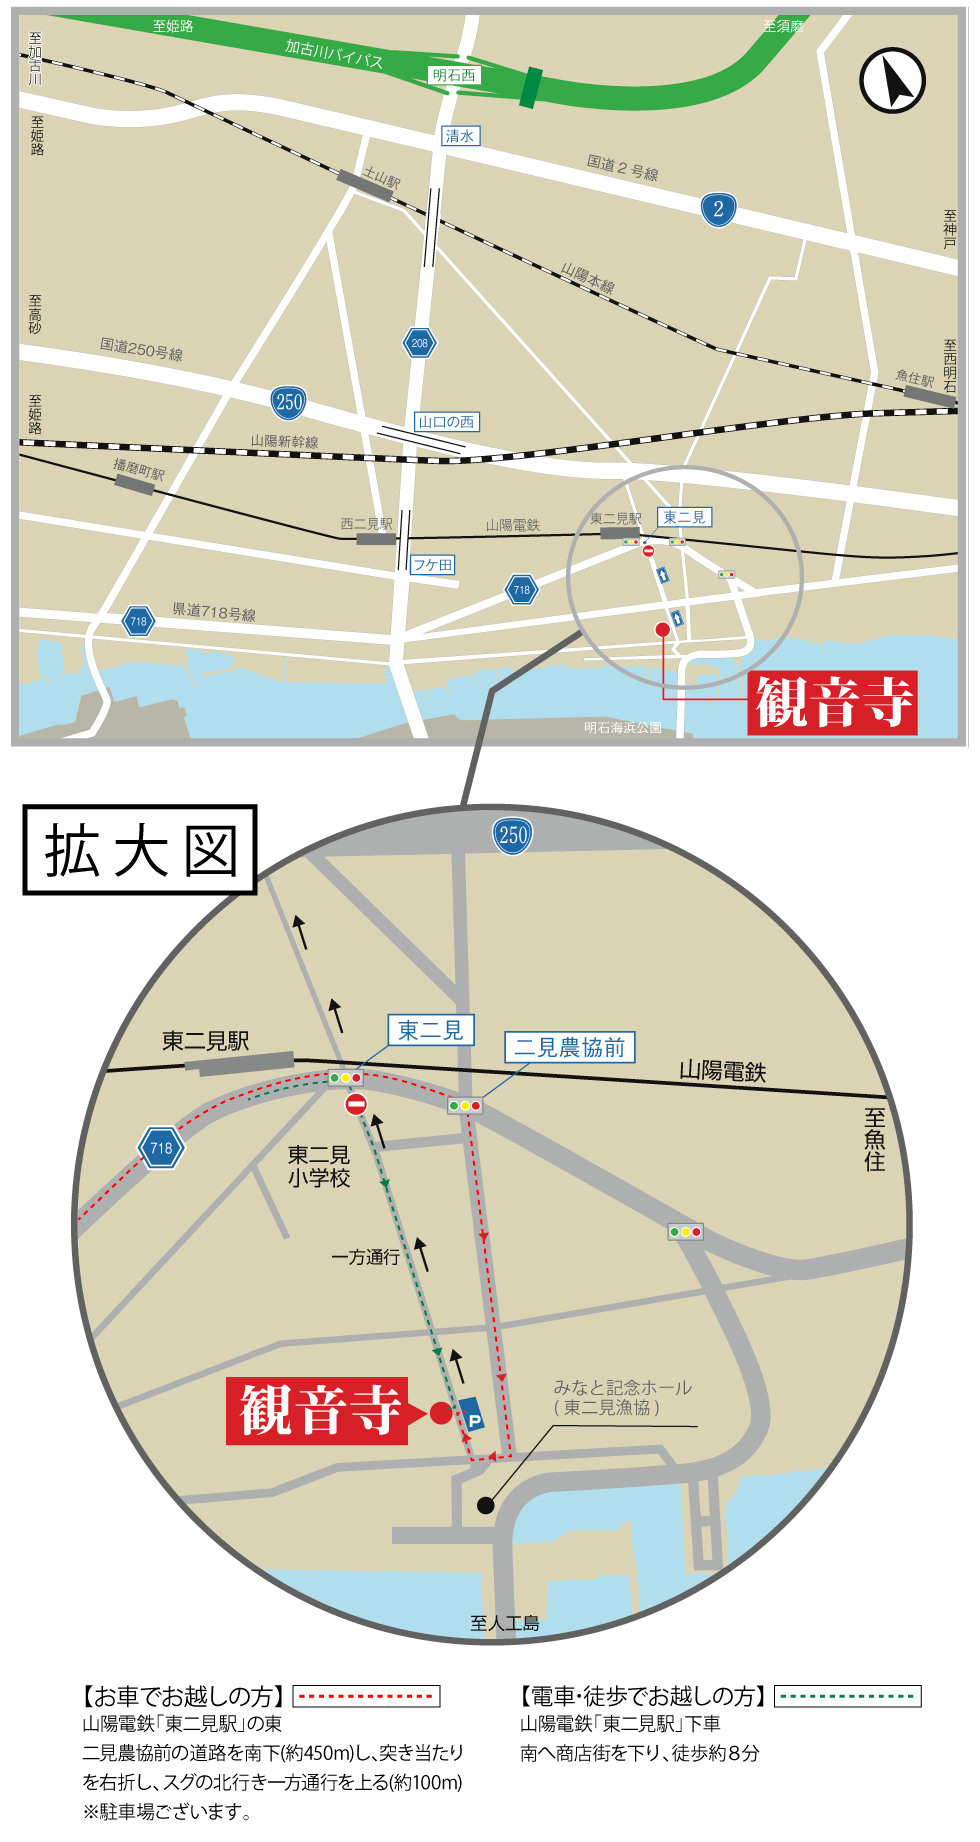 山陽電鉄「東二見駅」からの経路